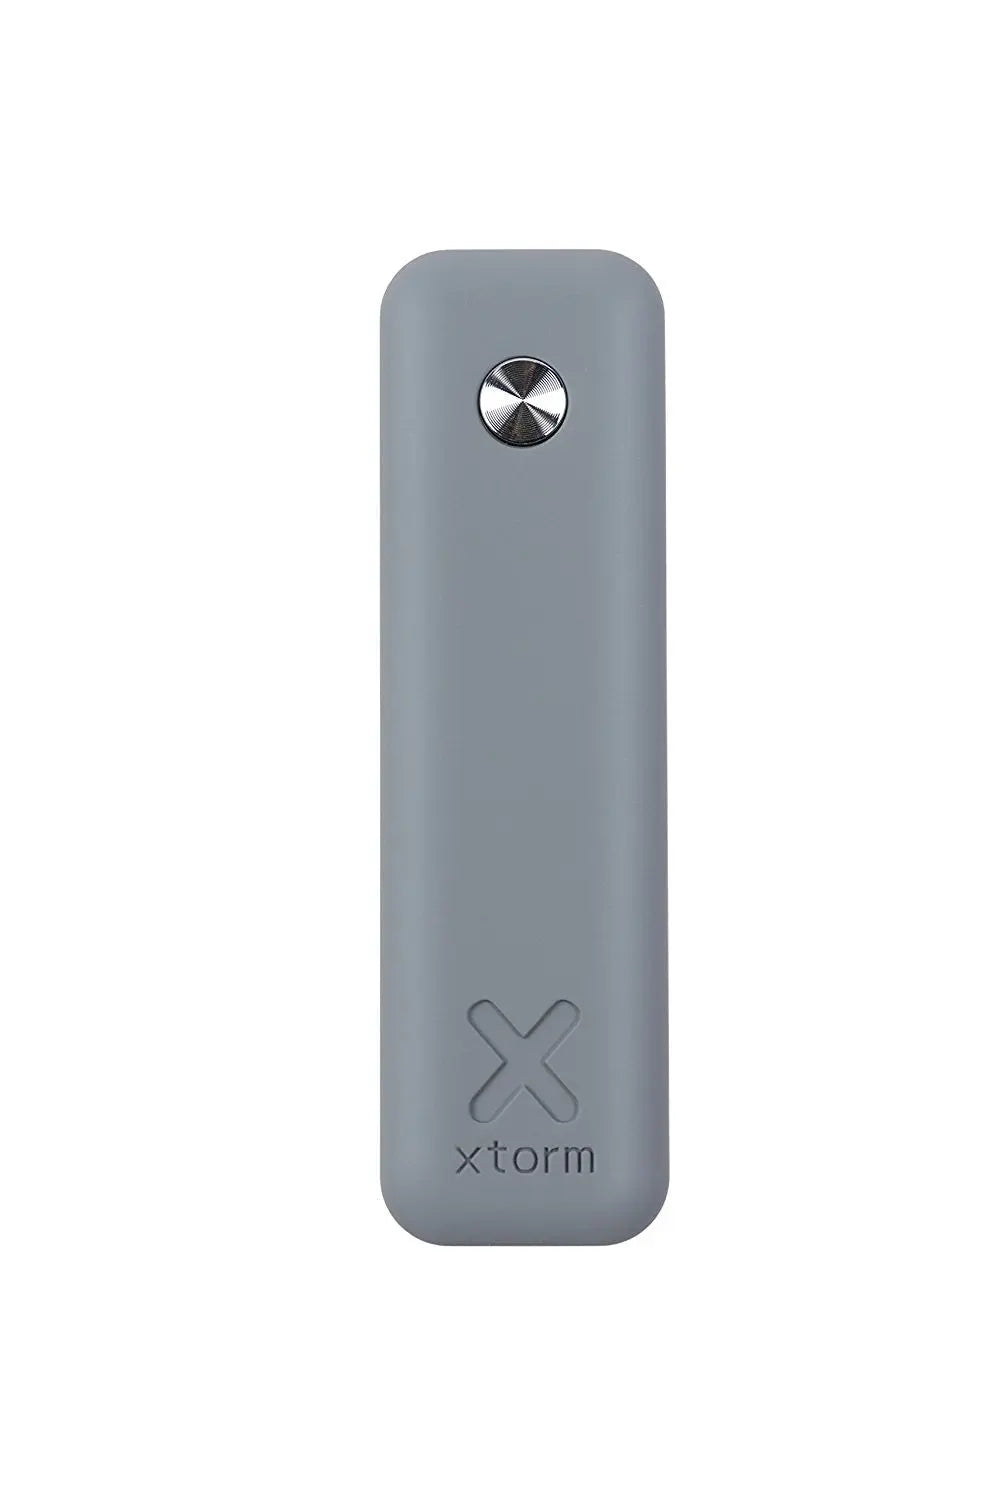 Xtorm Power Bank Move 2600 (Xb098) pokémon go 8718182271775 Xtorm